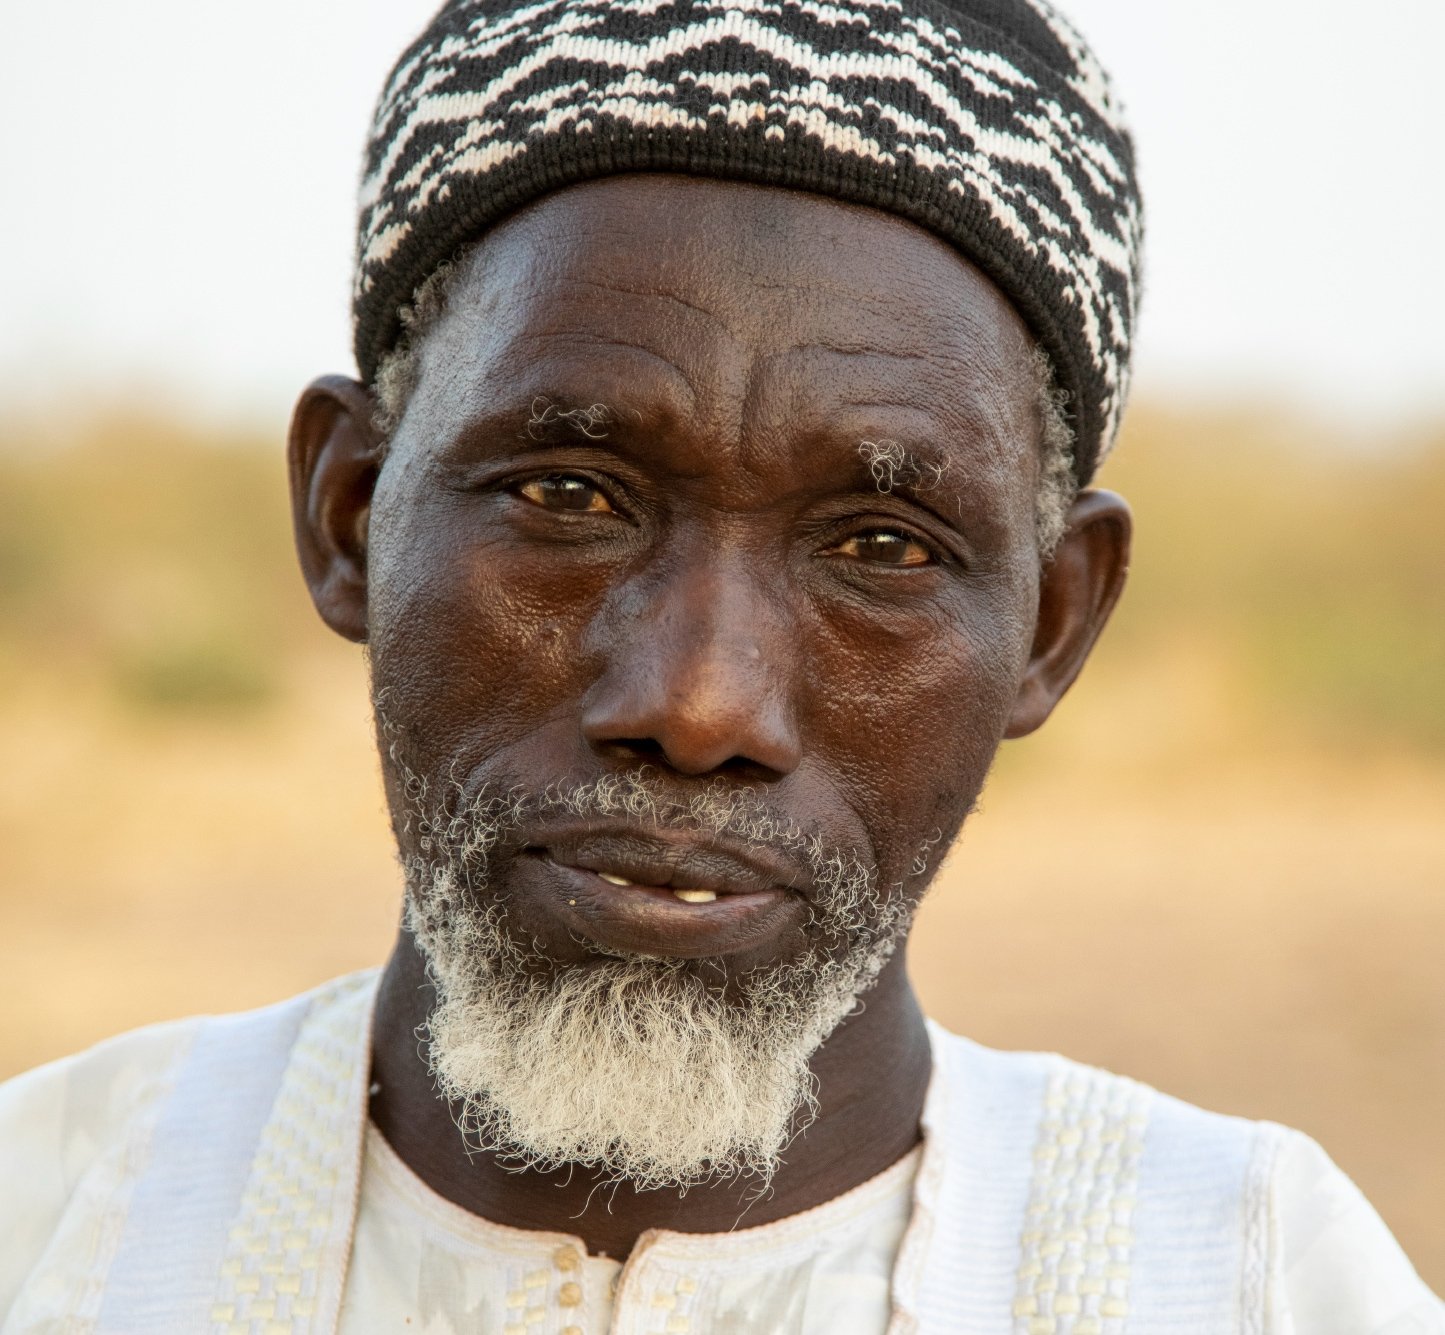 Portrait shot of Senegal man